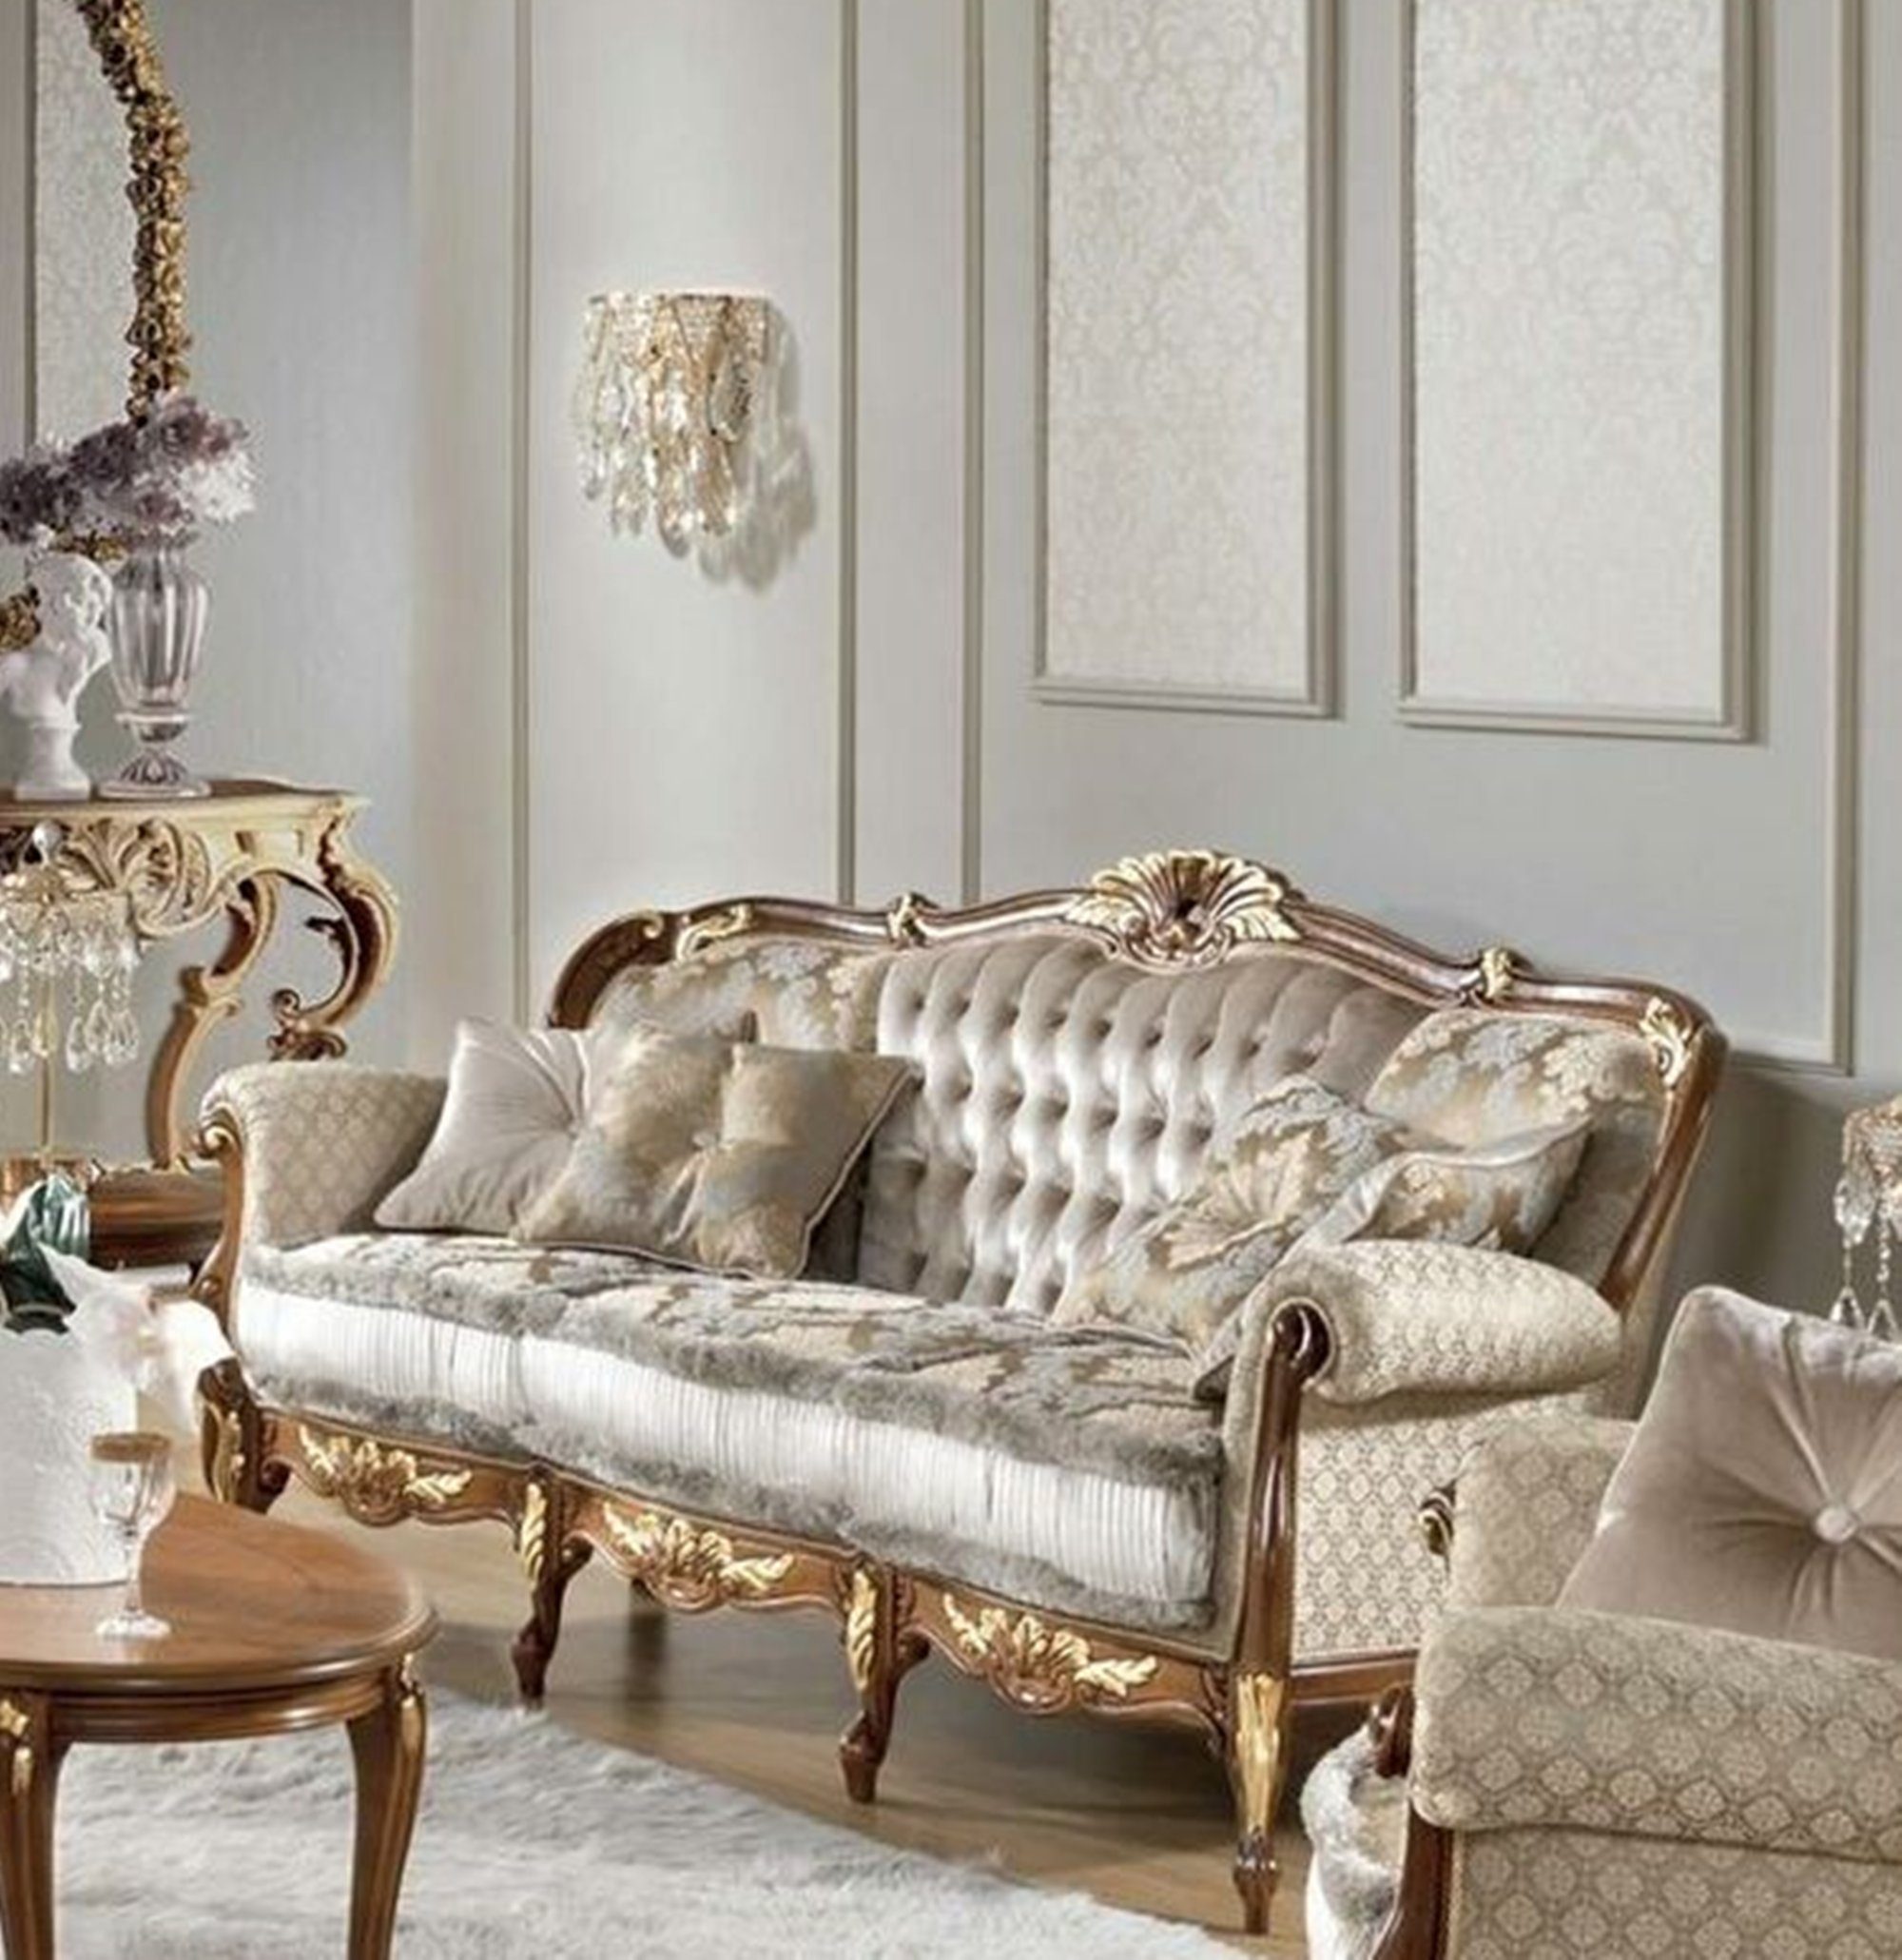 JVmoebel Sofa Klassischer Barock Dreisitzer Luxus 3-er Couch Luxus Möbel Brandneu, Made in Europe